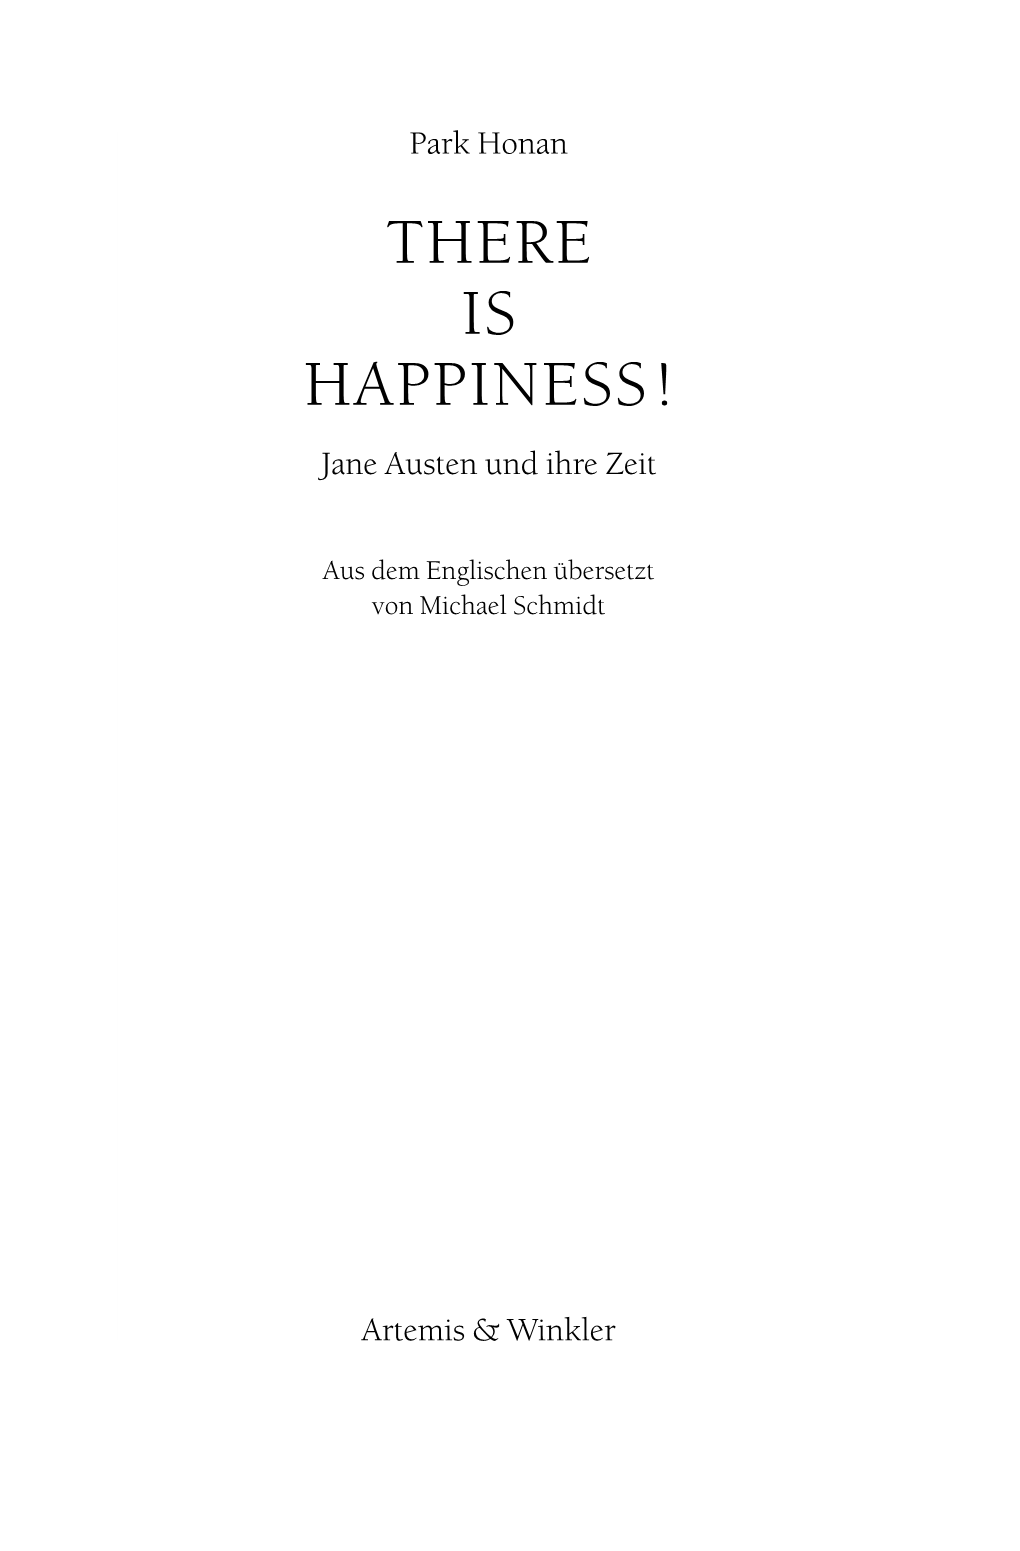 THERE IS HAPPINESS! Jane Austen Und Ihre Zeit